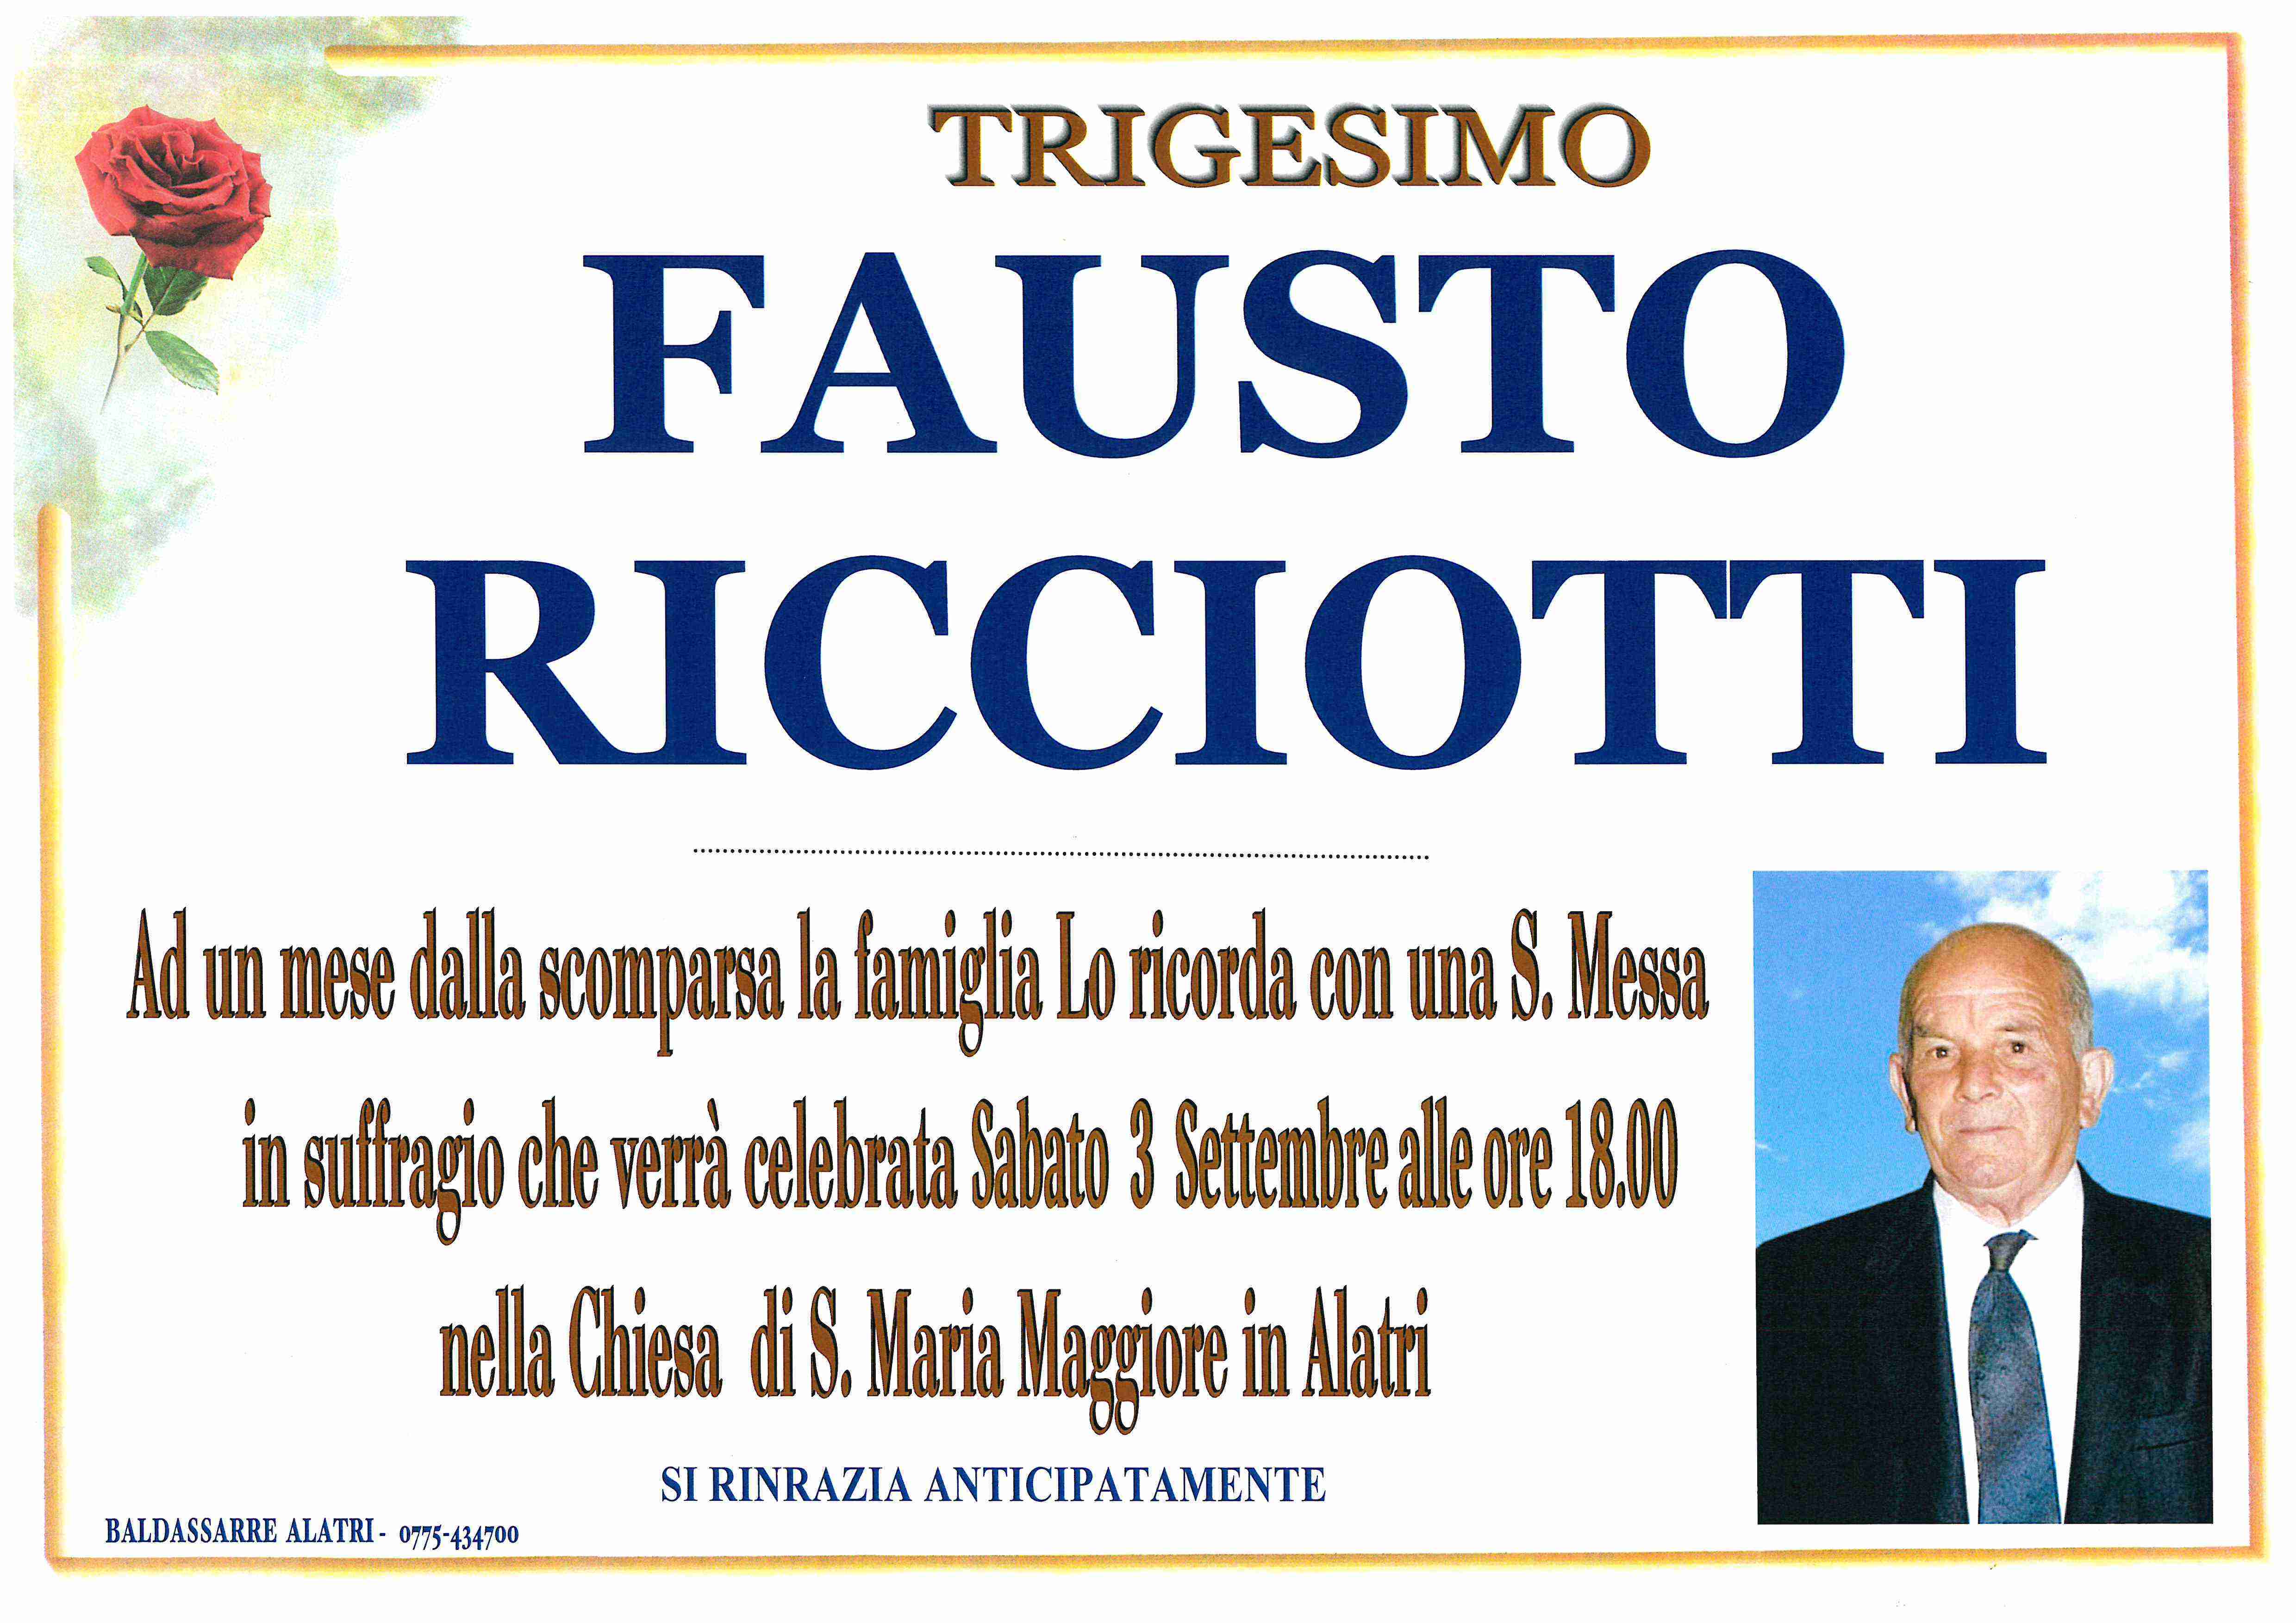 Fausto Ricciotti